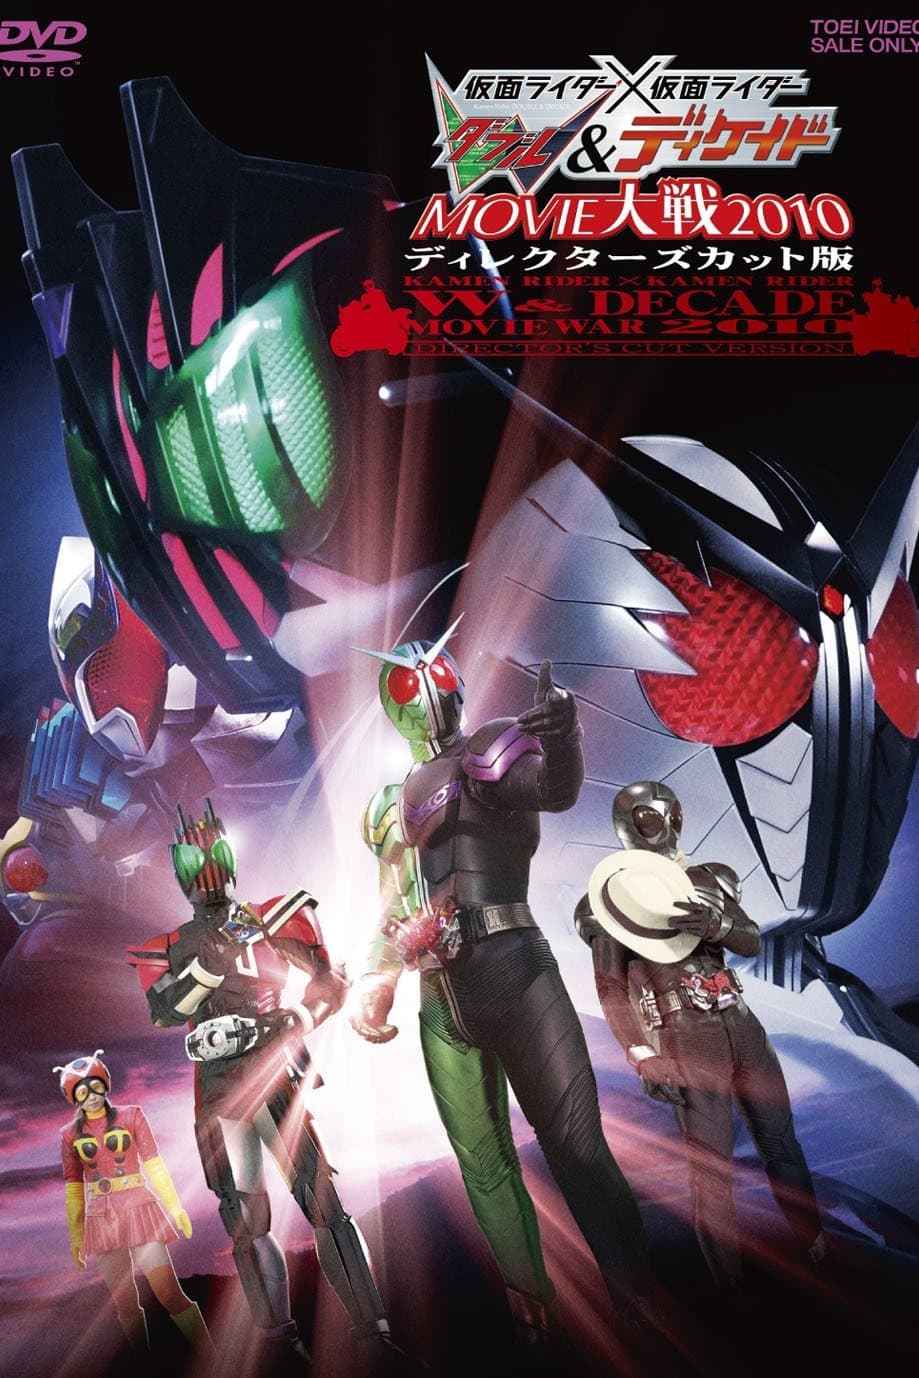 Kamen Rider × Kamen Rider W & Decade: Movie War 2010 - Director's Cut